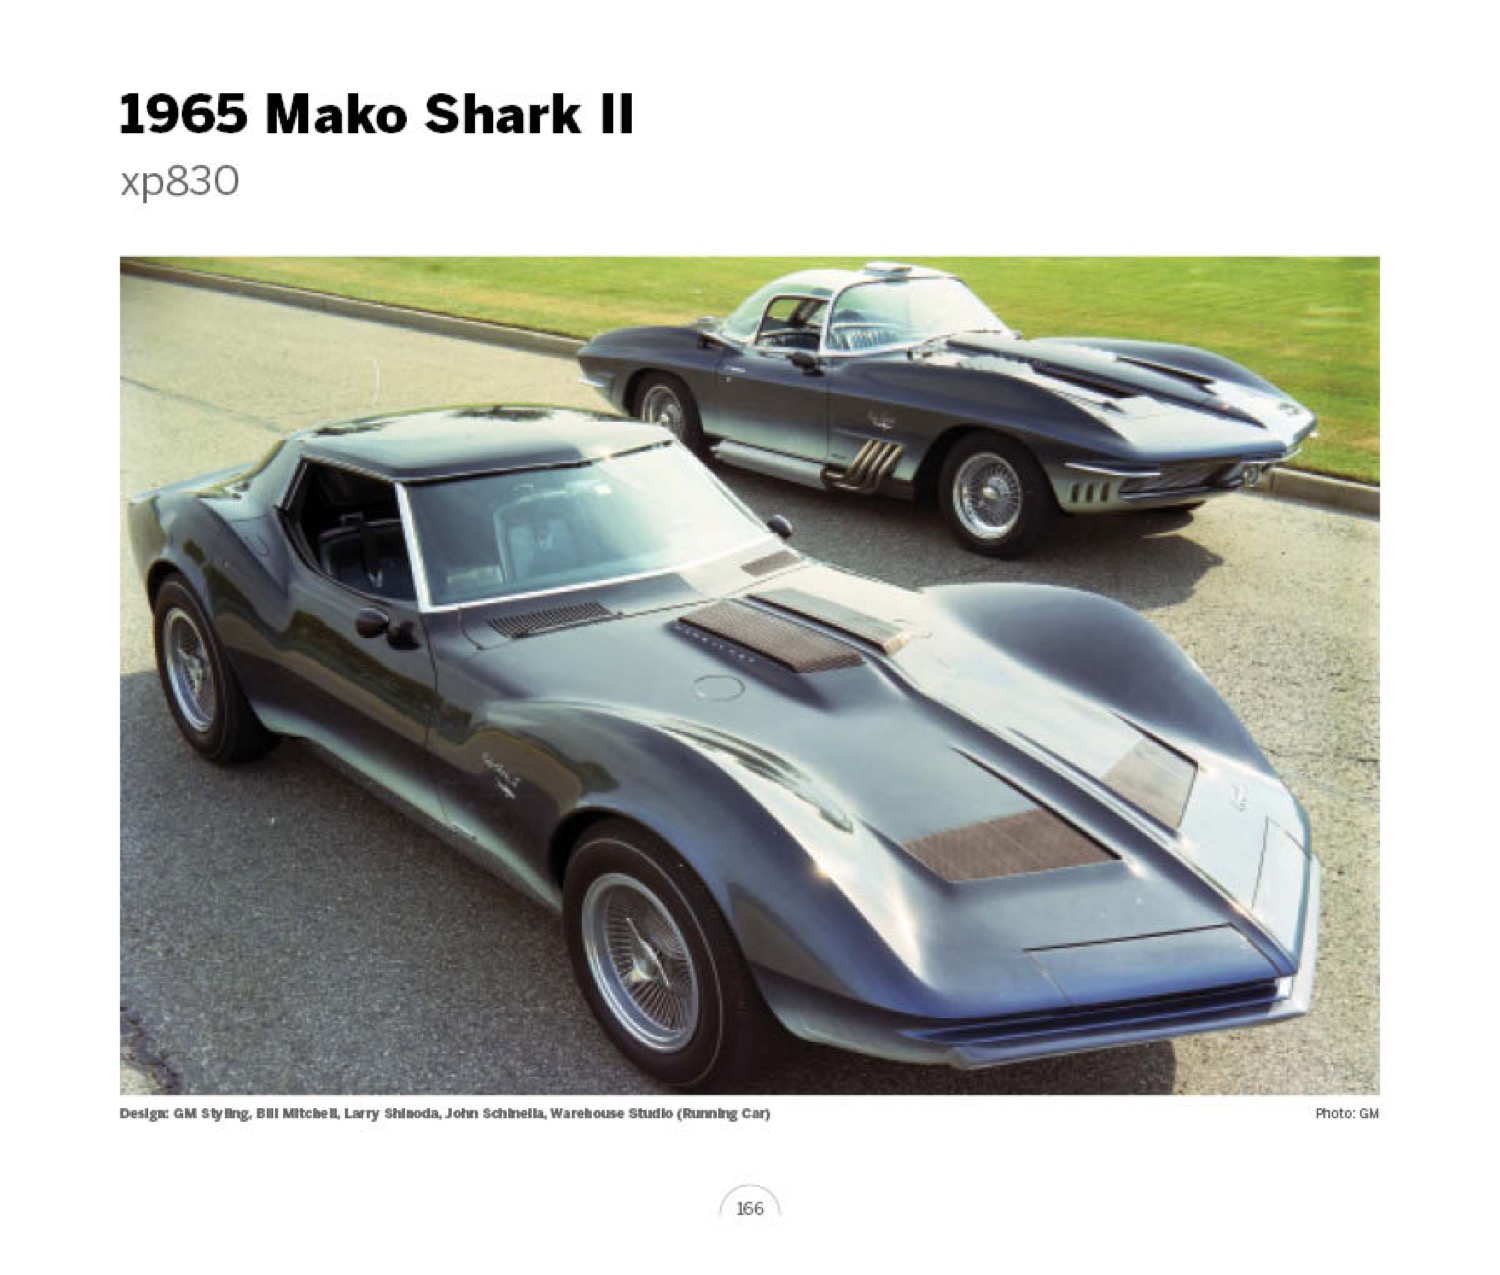 (17) 1965 Mako Shark II xp830 LoRez.jpg